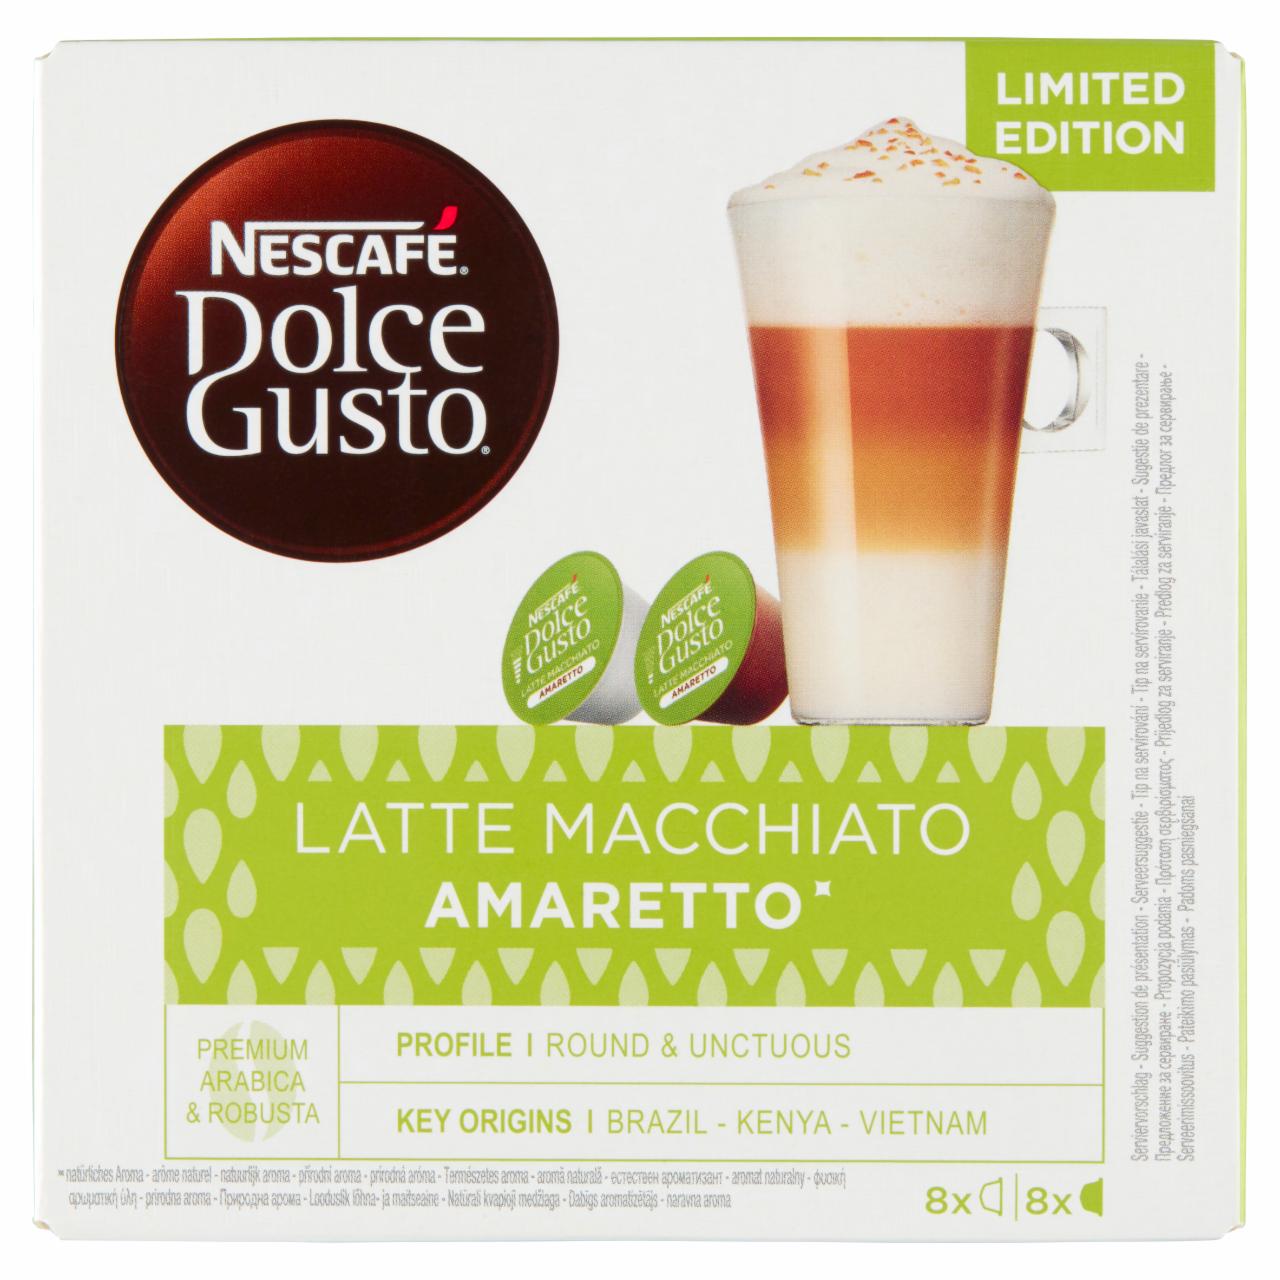 Zdjęcia - Nescafé Dolce Gusto Latte Macchiato Amaretto Kawa w kapsułkach 160 g (8 x 14 g i 8 x 6 g)